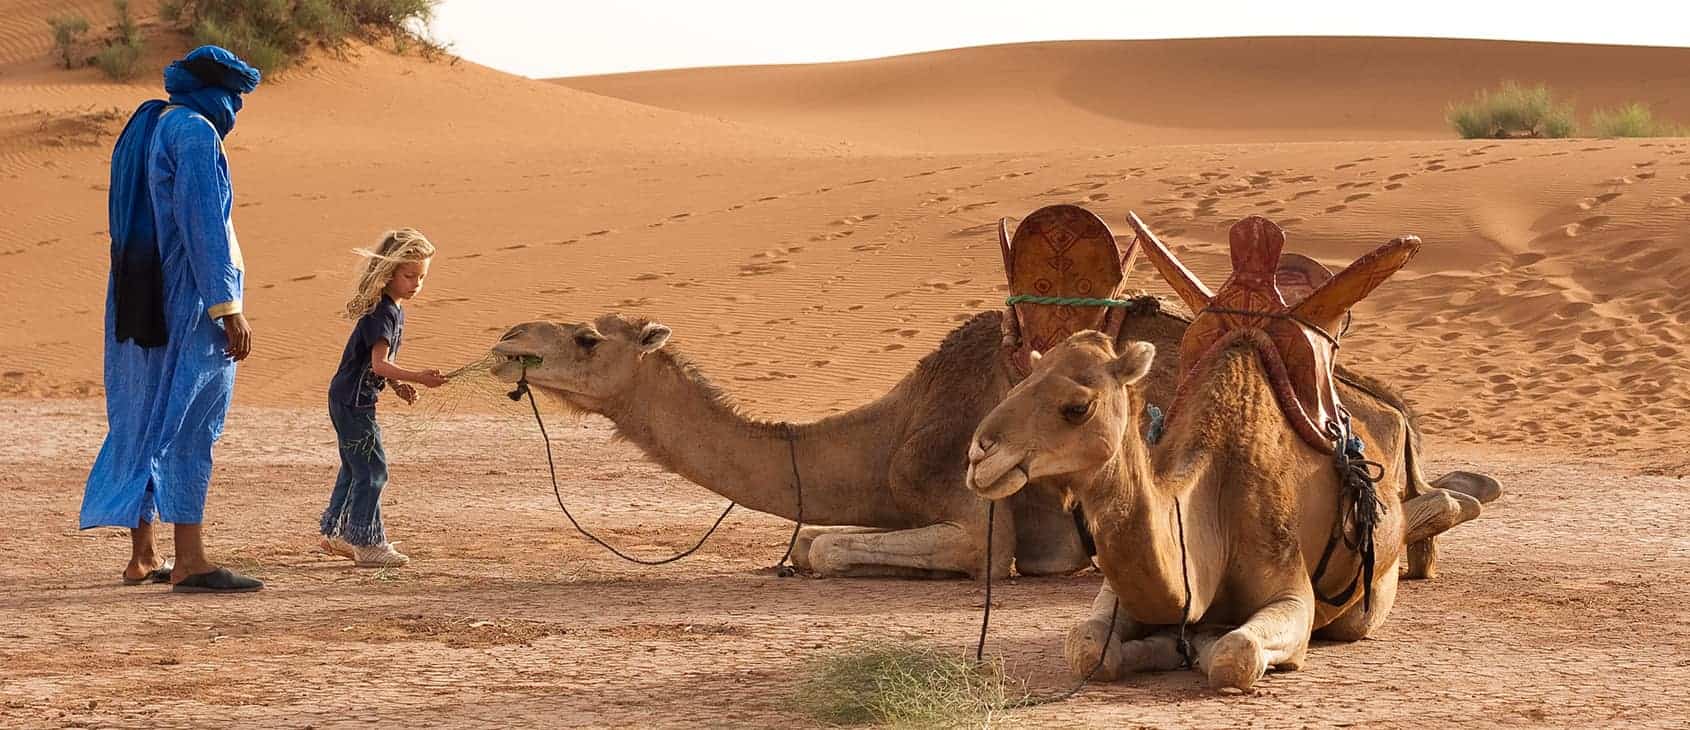 Young girl feeding a camel